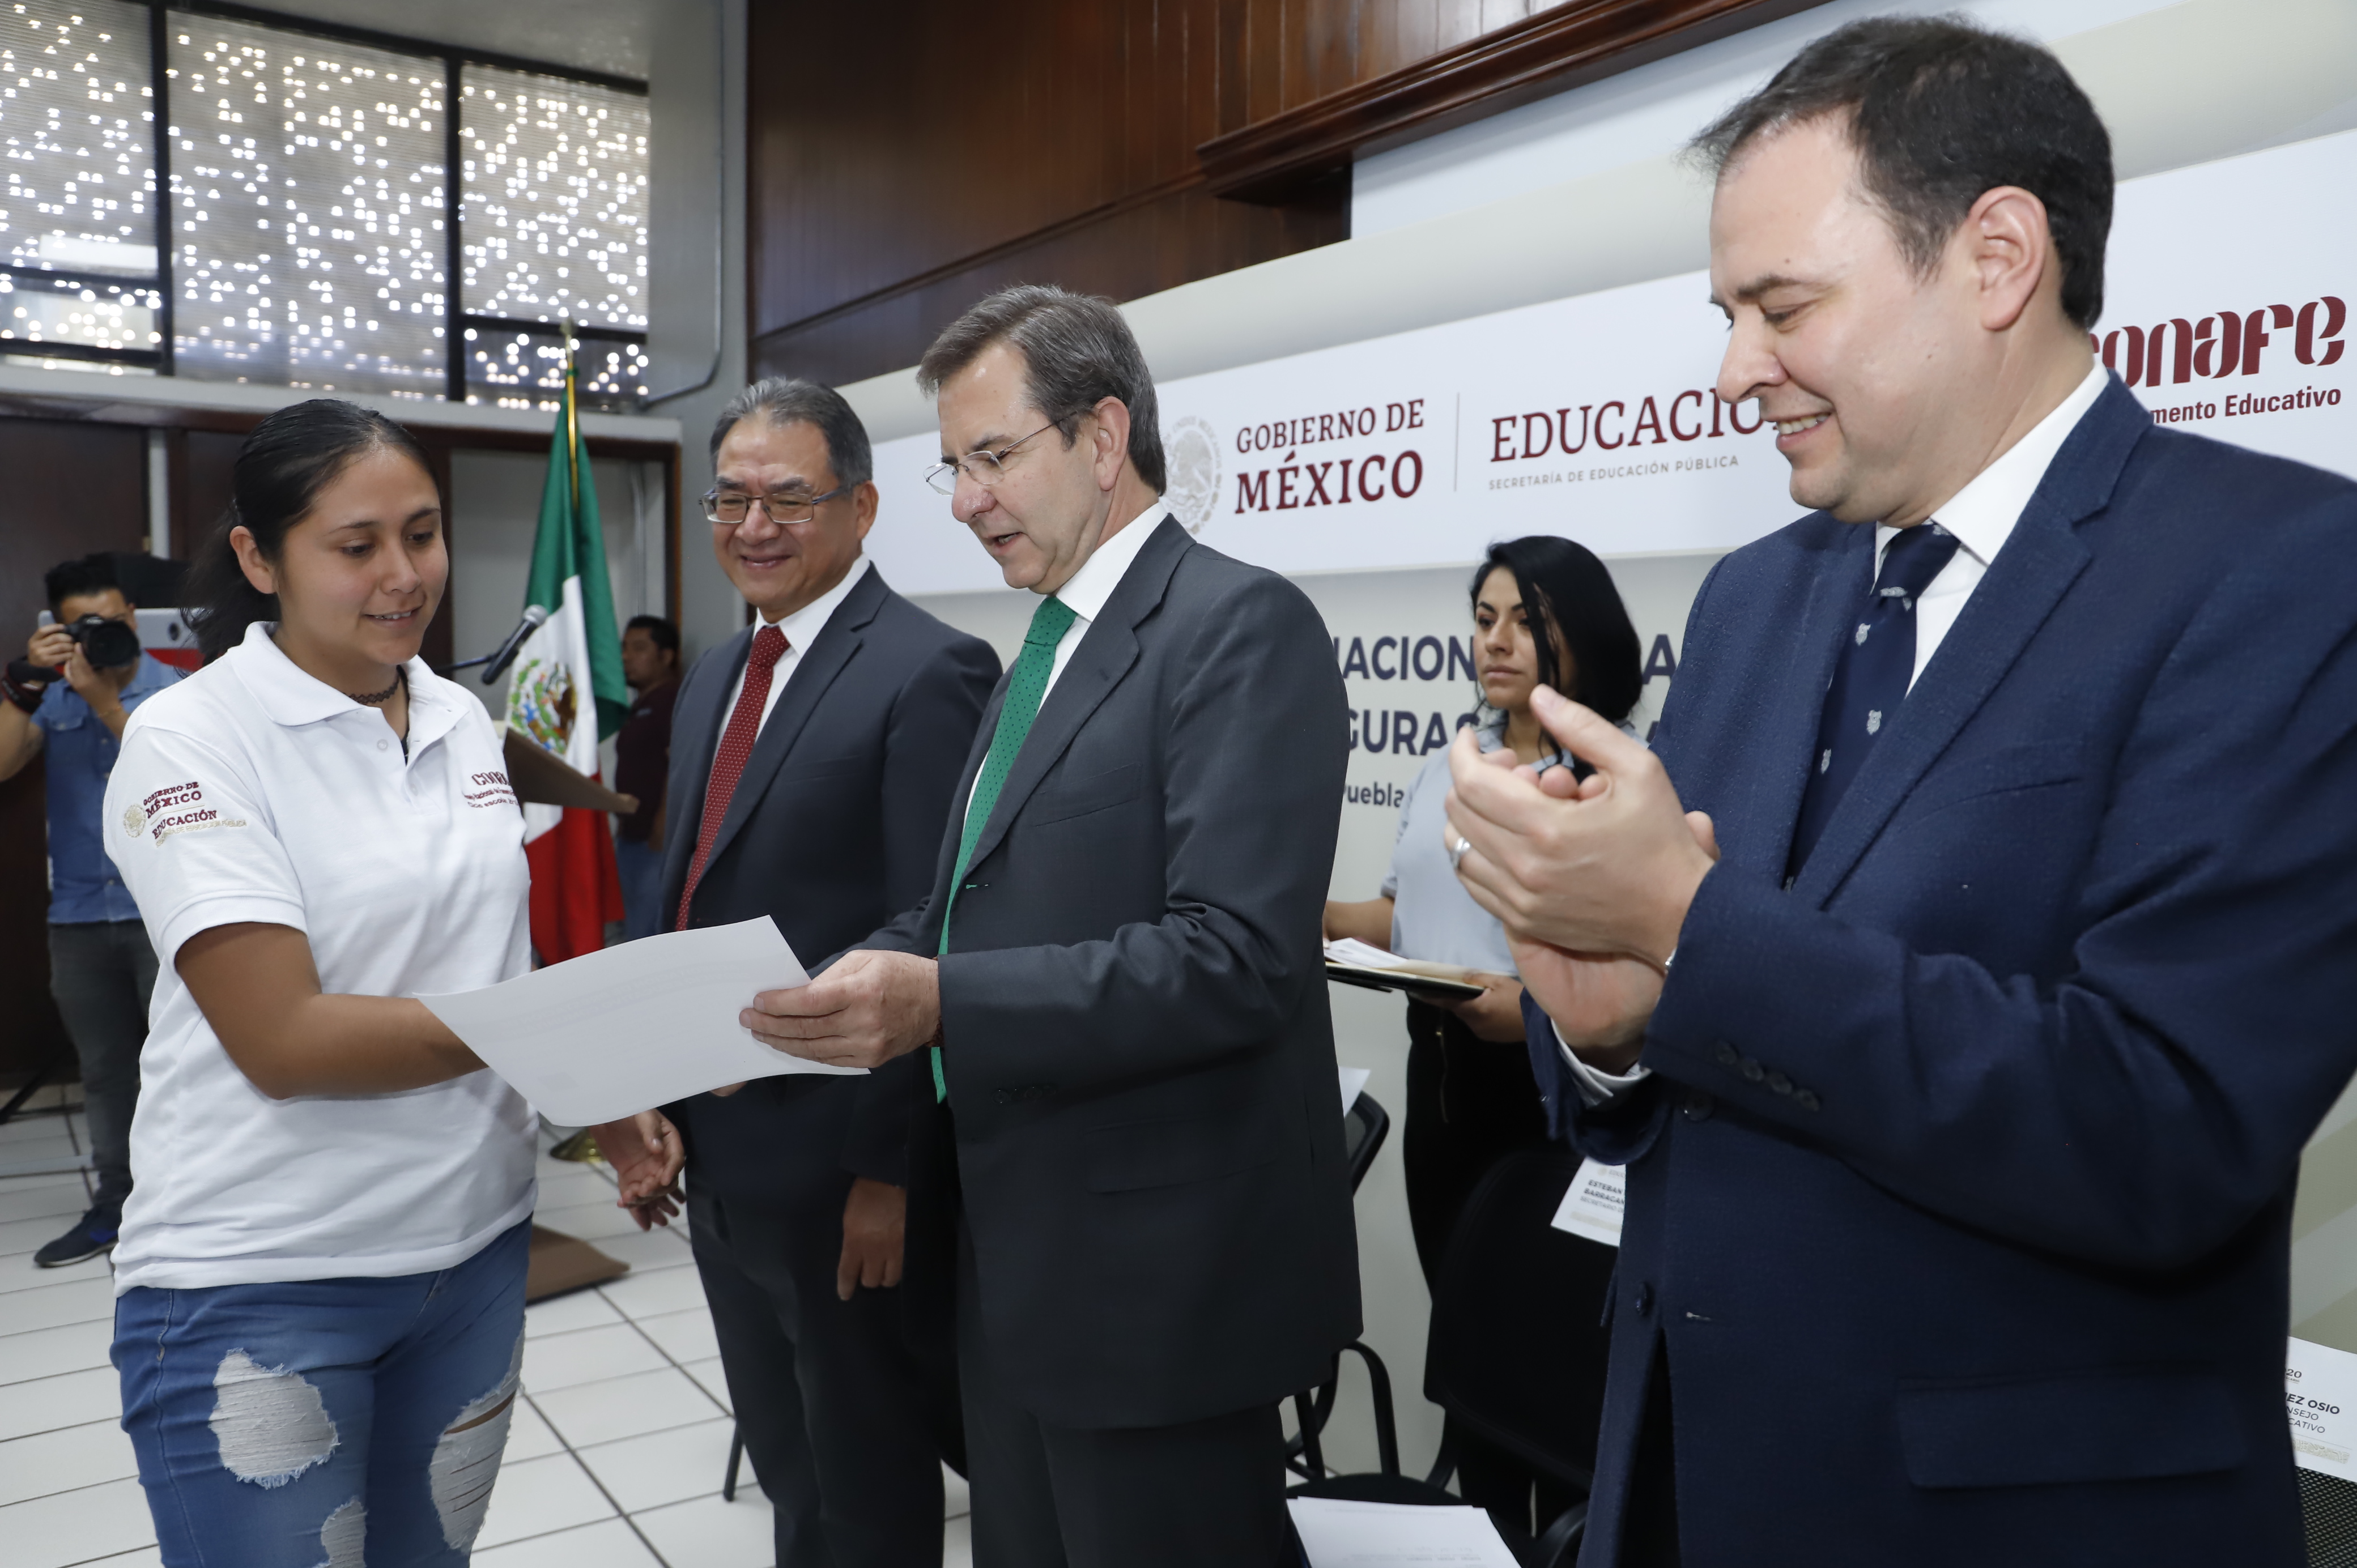 Boletín No. 48 Certificación de conocimientos, proceso fundamental para el desarrollo de las personas: Esteban Moctezuma Barragán